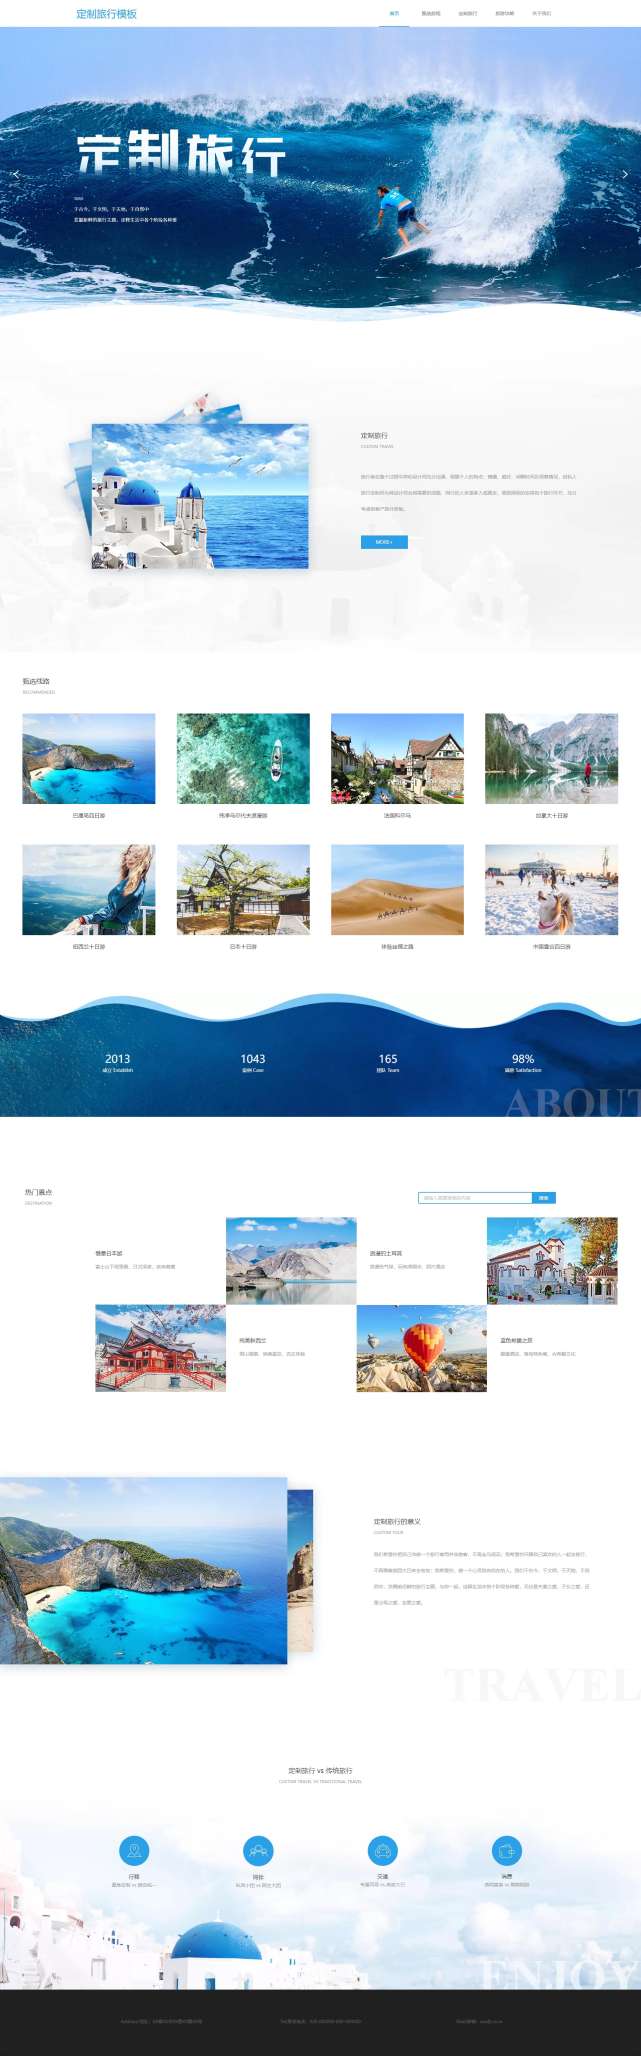 精品定制旅行出游网站模板